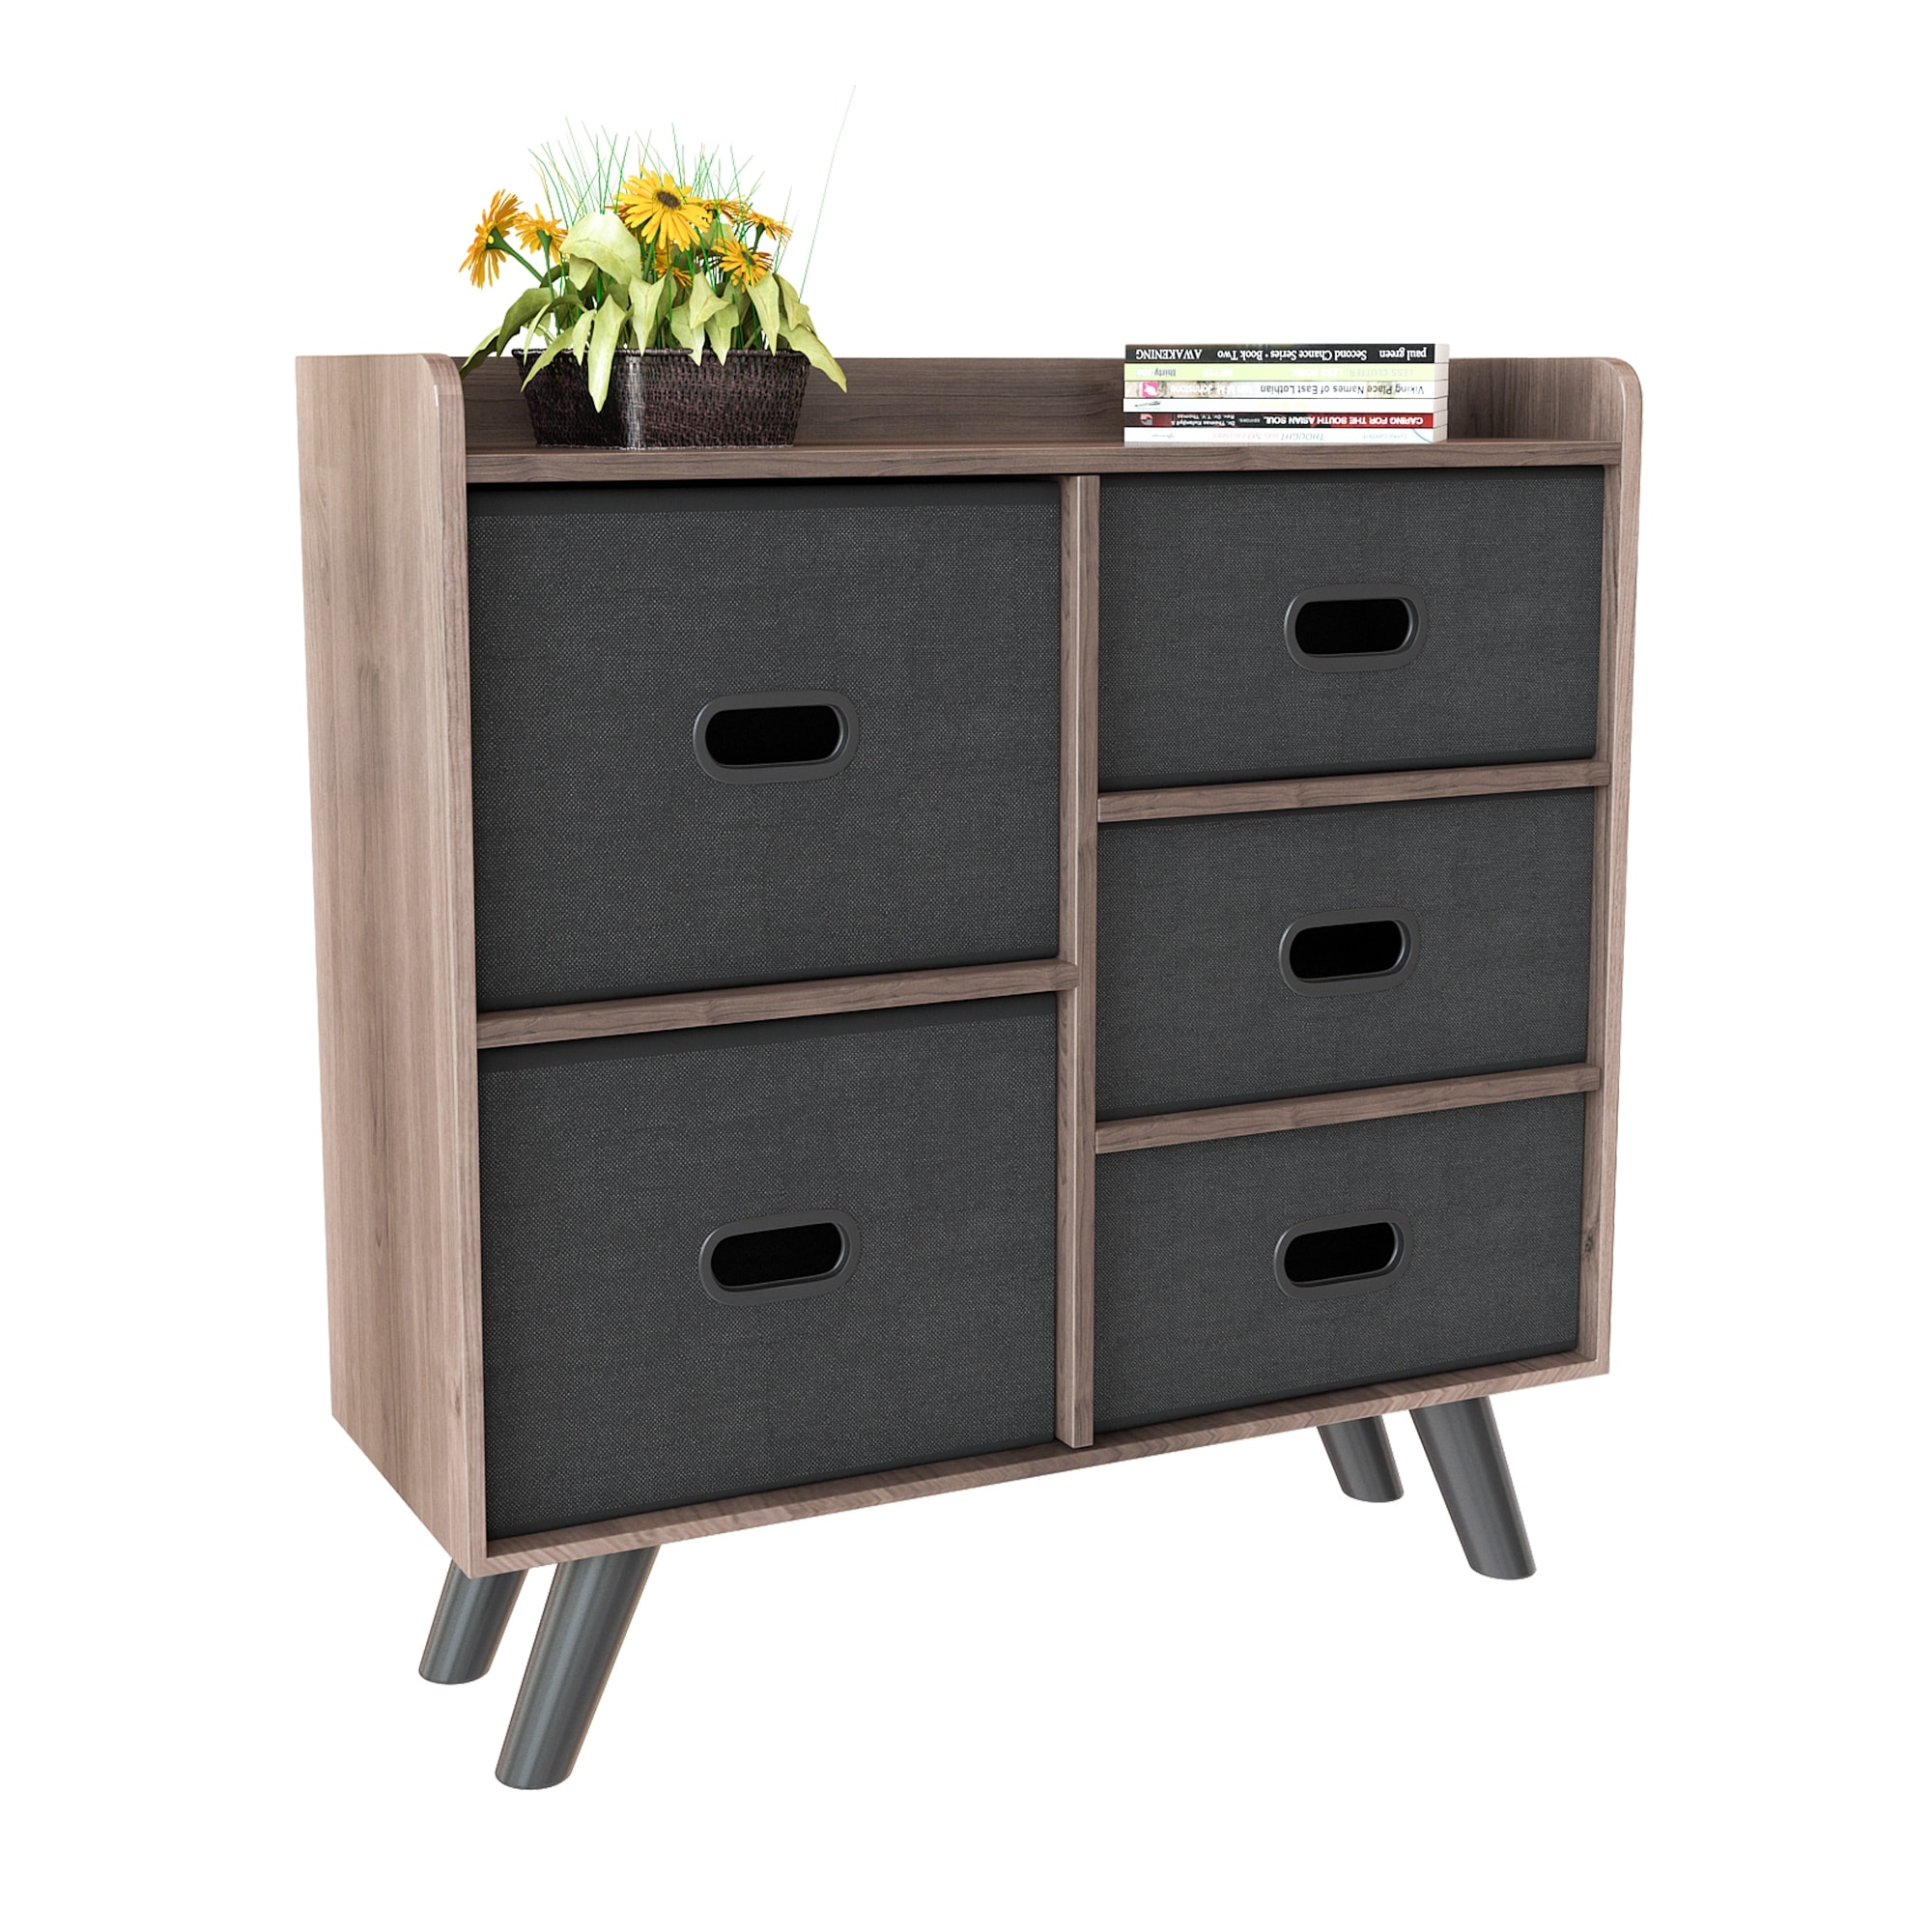 5 Drawer Chest Cabinet Dresser Storage Organizer Closet Wood Bedroom Furniture